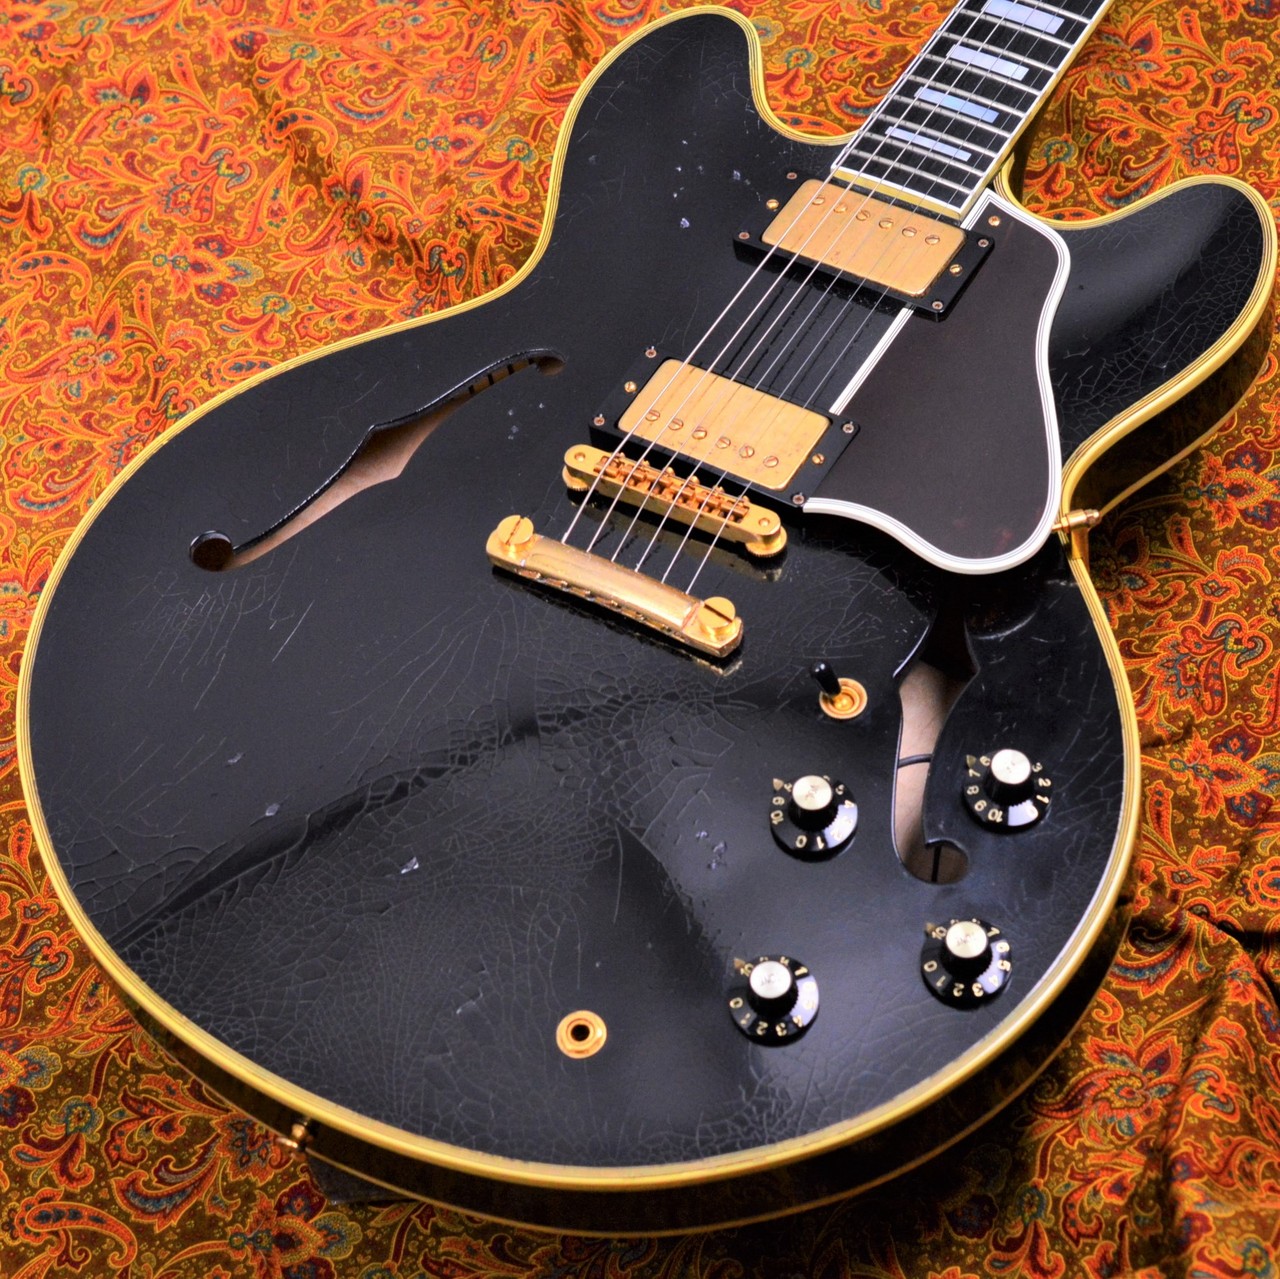 G'Seven Guitarsよりヘヴィーデューティなエイジド加工が施された ES-355モデルg7 Special g7-355/MS Relic BlackBeauty